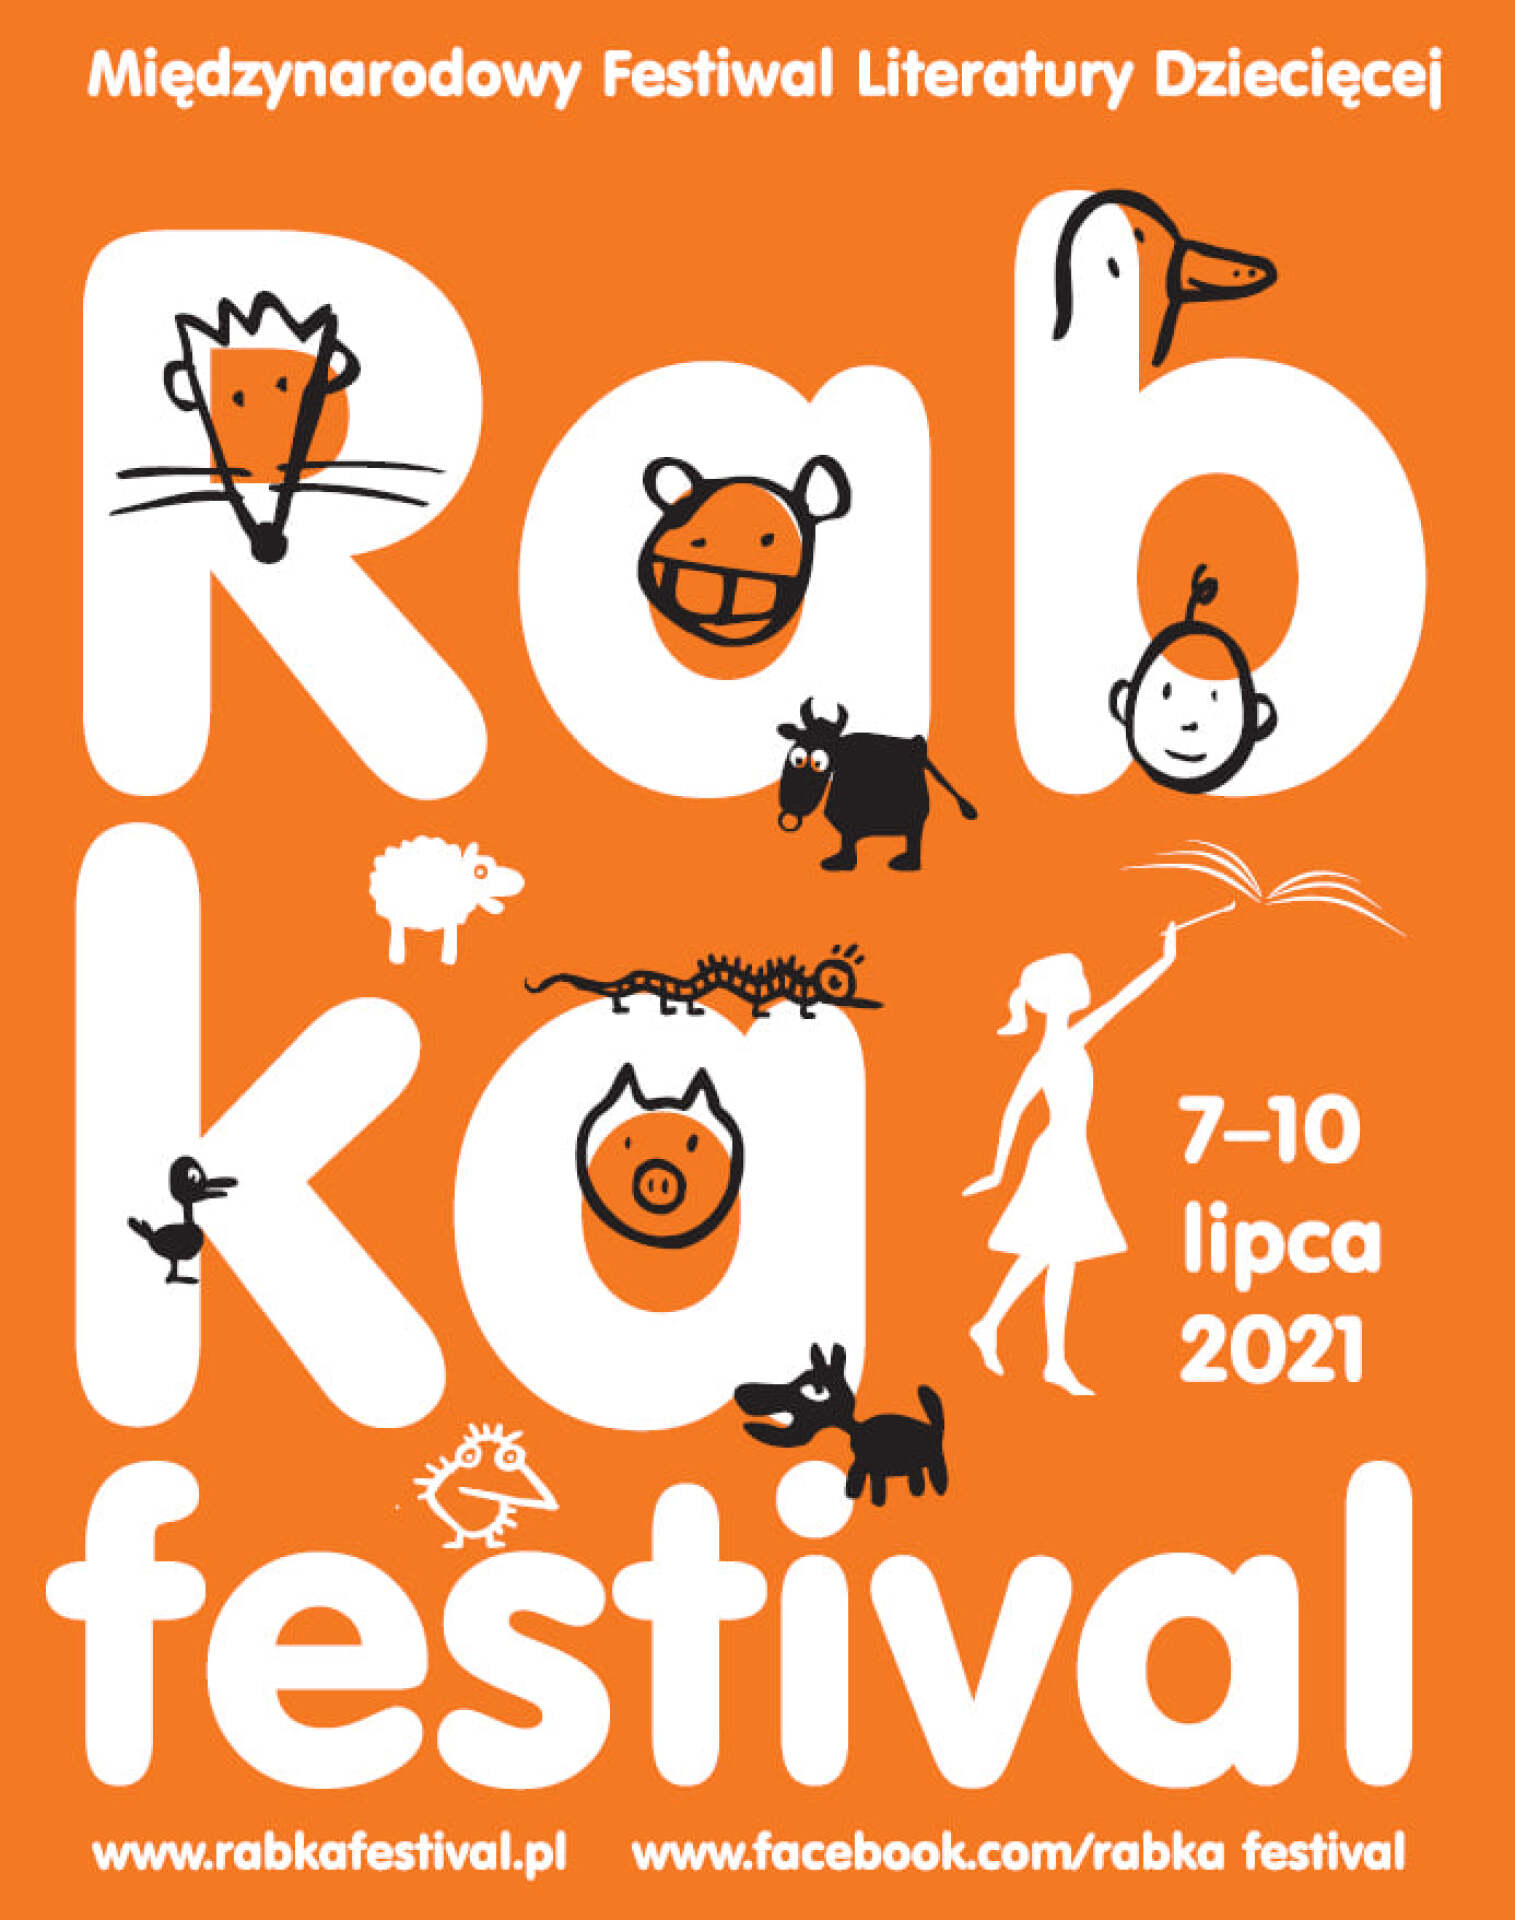 Rabka Festival - Międzynarodowy Festiwal Literatury Dziecięcej